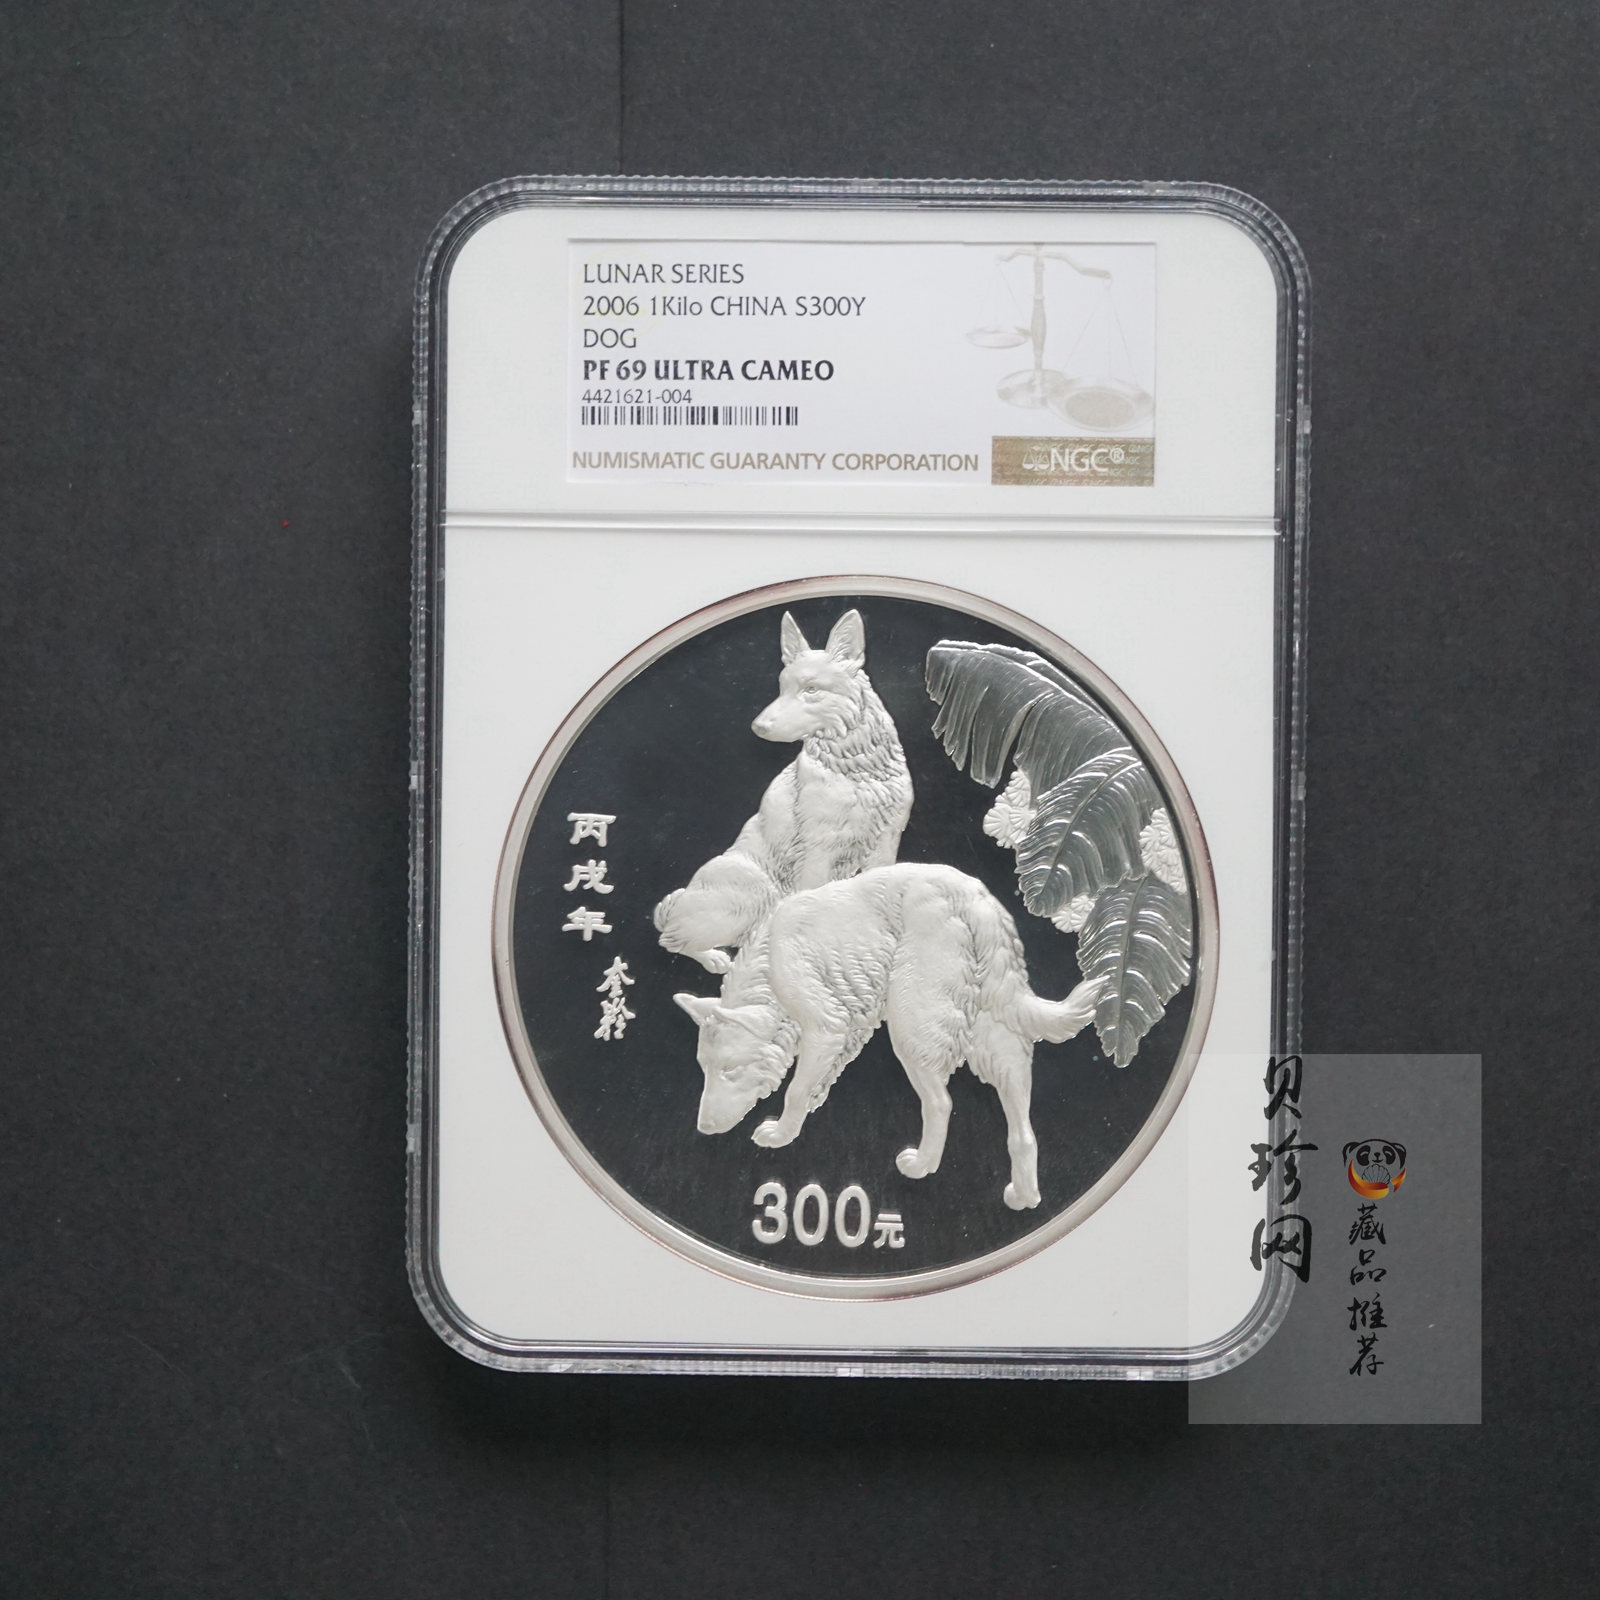 【060207】2006年丙戌狗年生肖1公斤精制银币